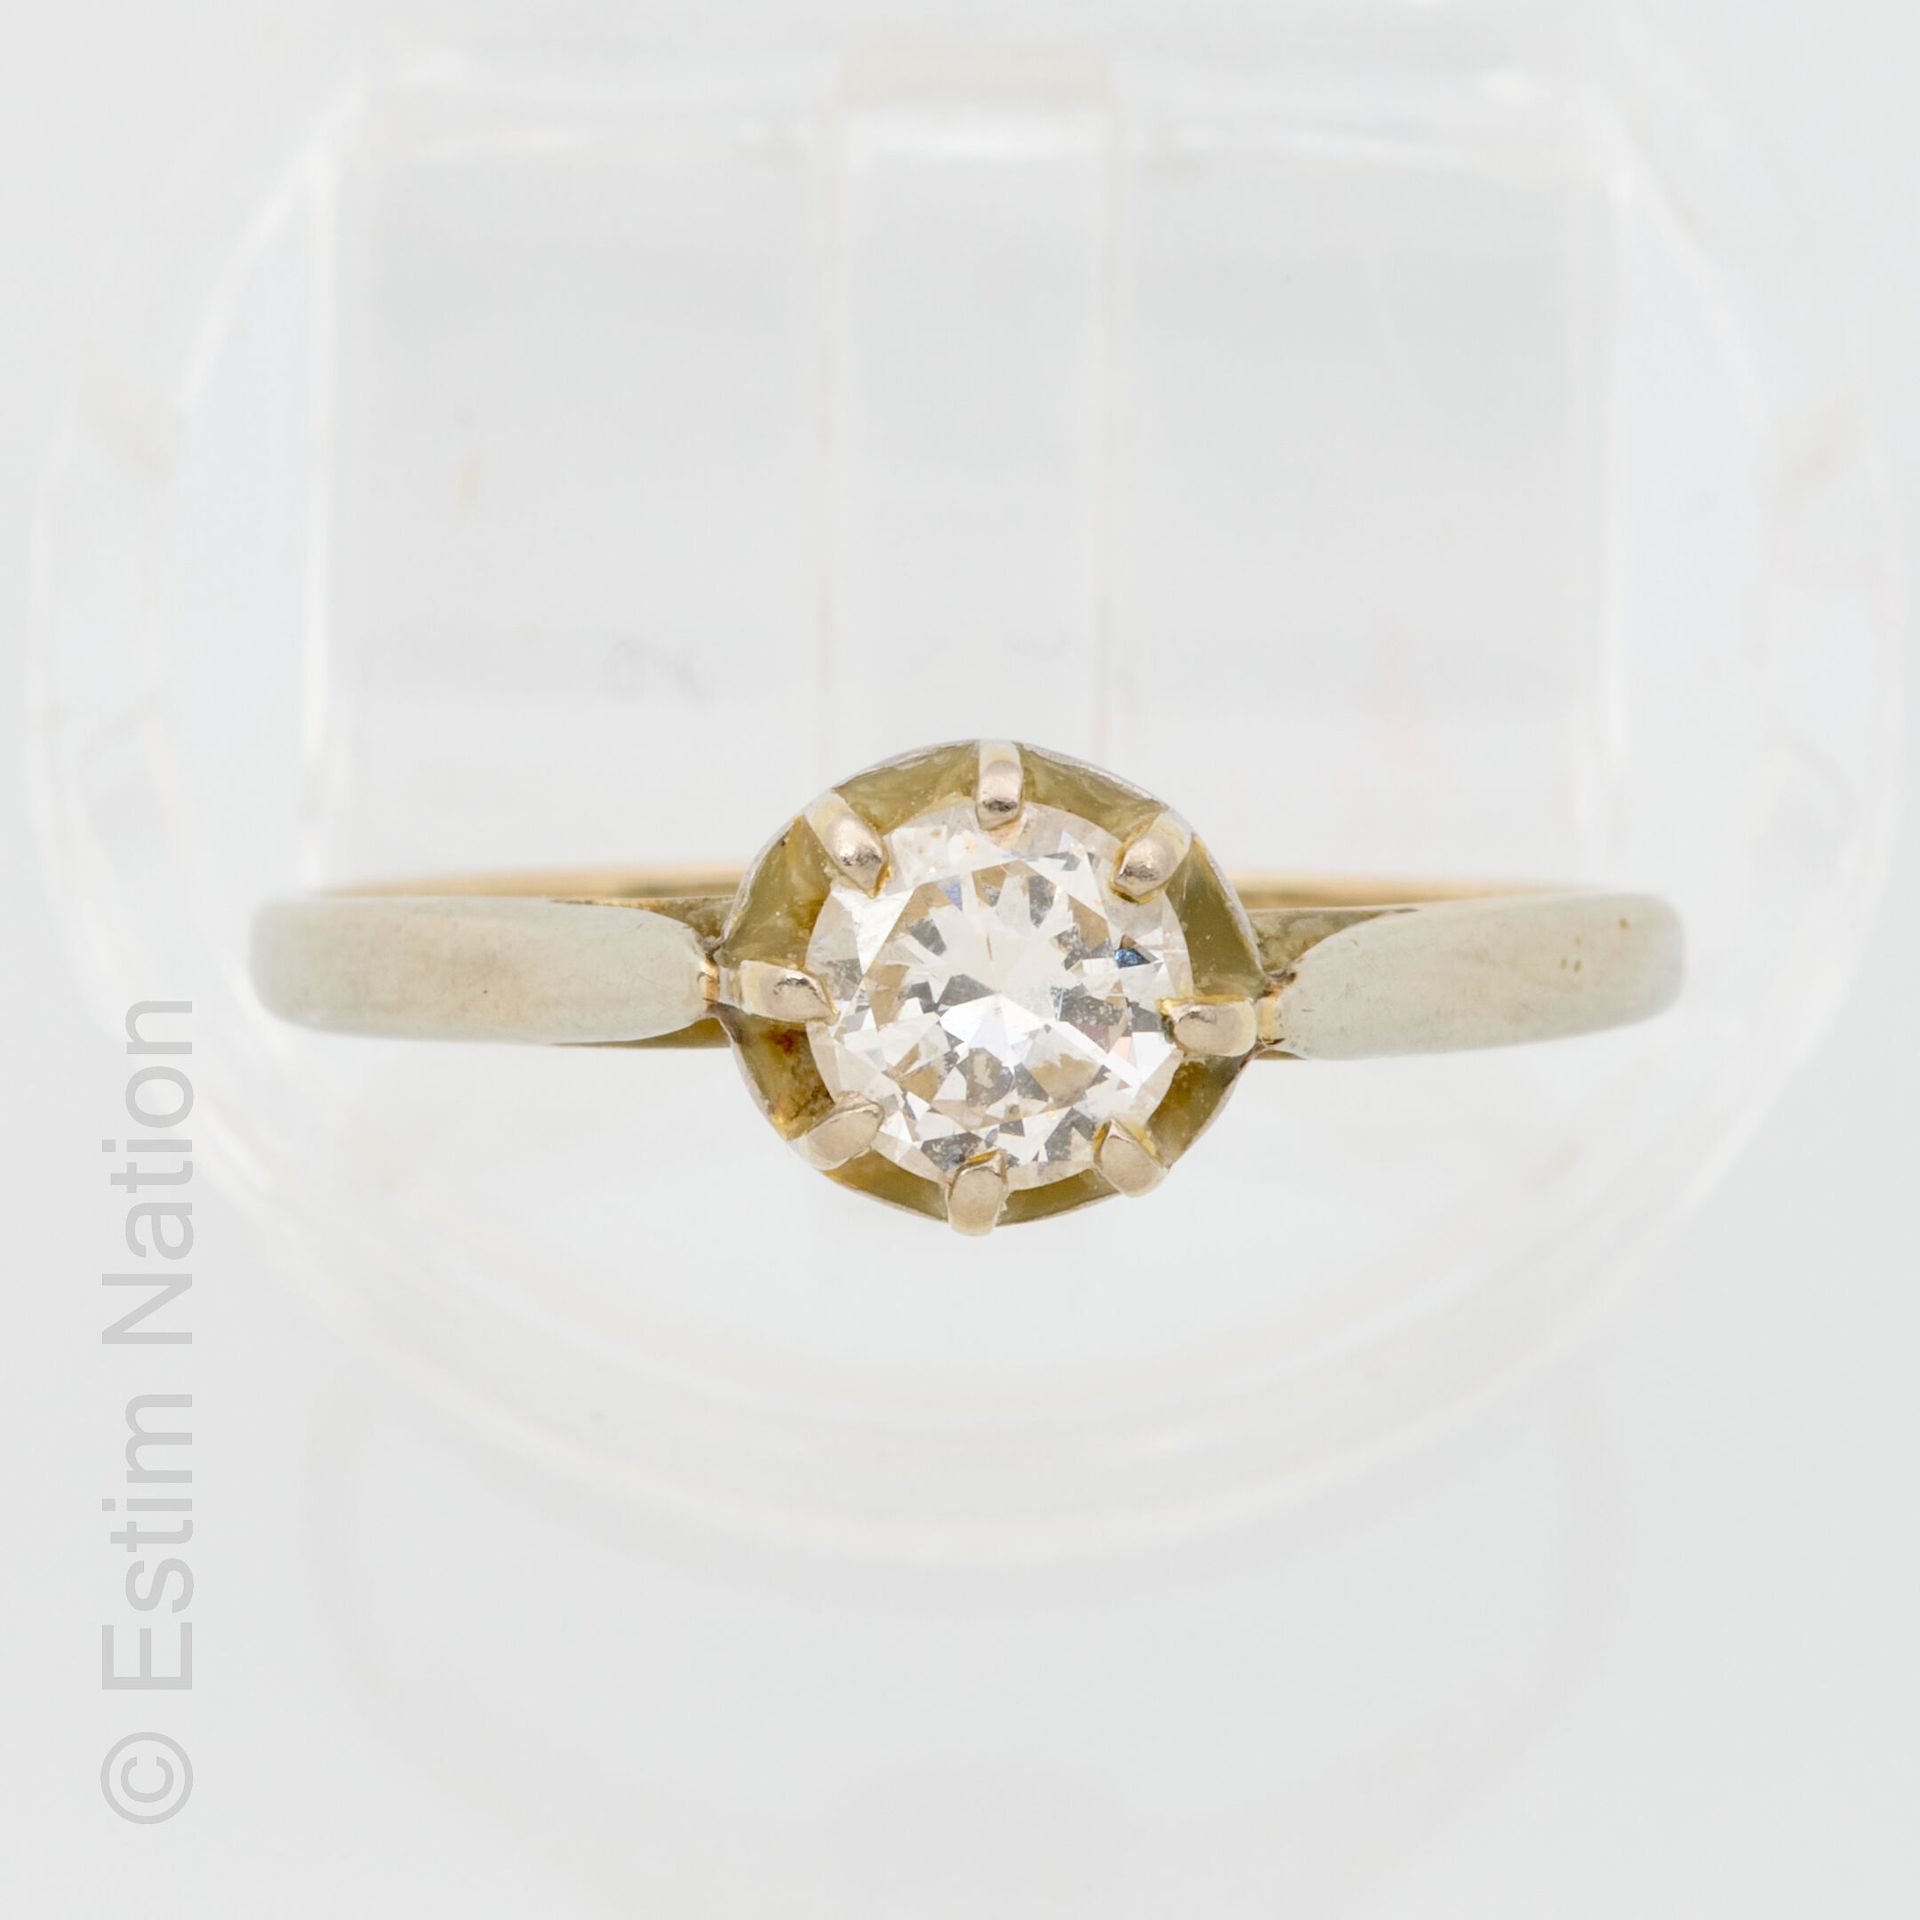 BAGUE OR DIAMANT 18K（750千分之一）白金戒指，爪式镶嵌约0.48克拉的明亮型切割钻石。手指周长：57。毛重：2克。